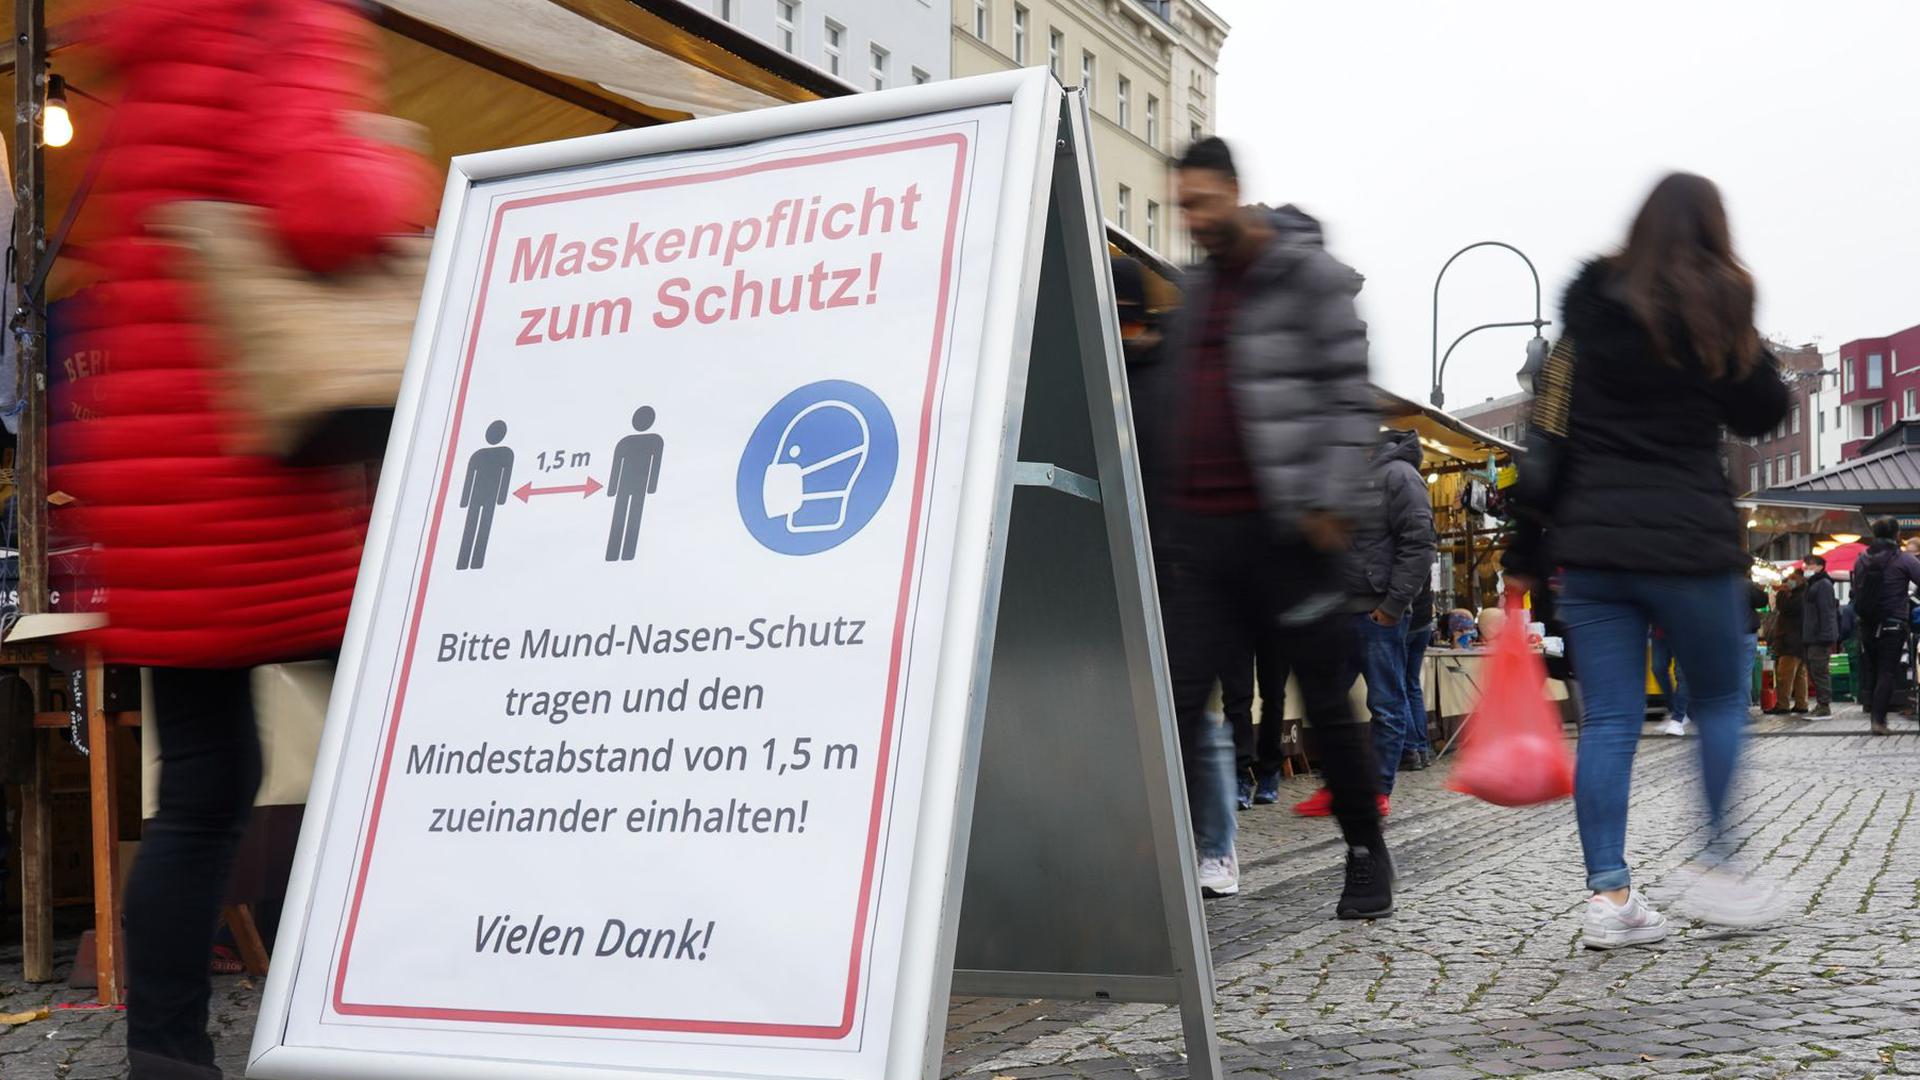 Ein Schild weist auf einem Wochenmarkt in Berlin auf Maskenpflicht und Abstandsgebot hin.